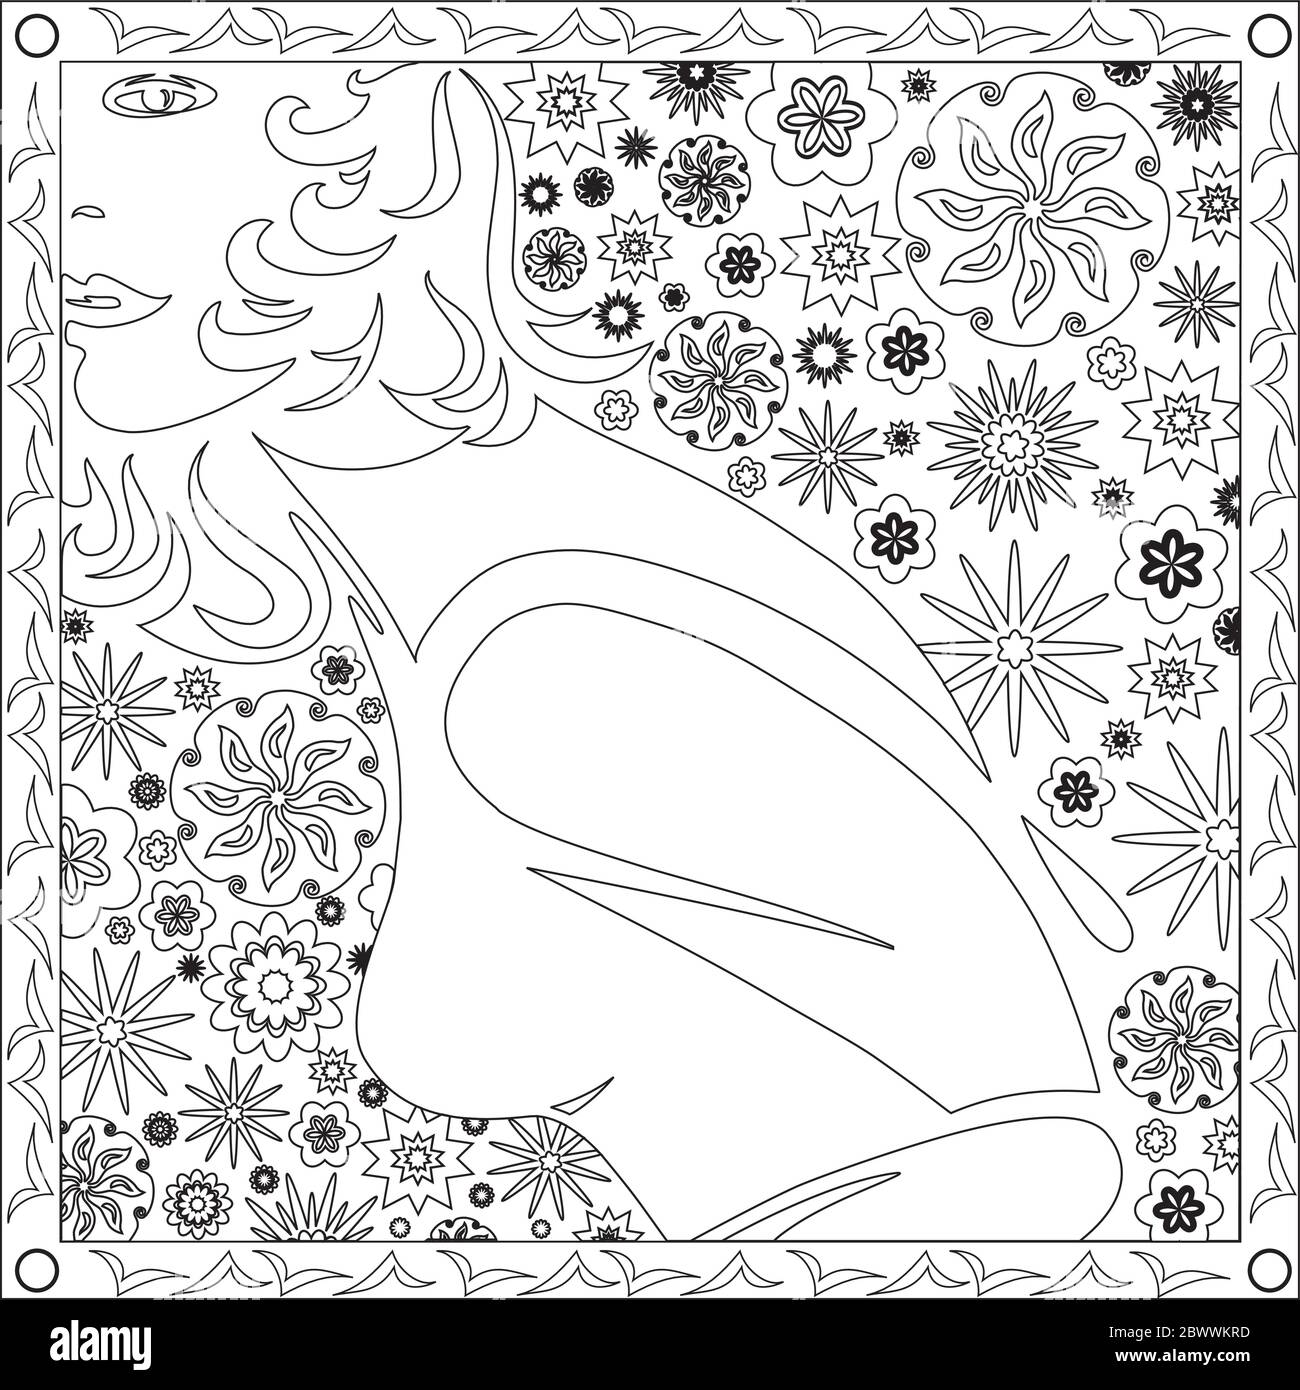 Illustration de la page de coloriage en format carré pour adultes, visage et corps de la conception de fille et de fleur Illustration de Vecteur